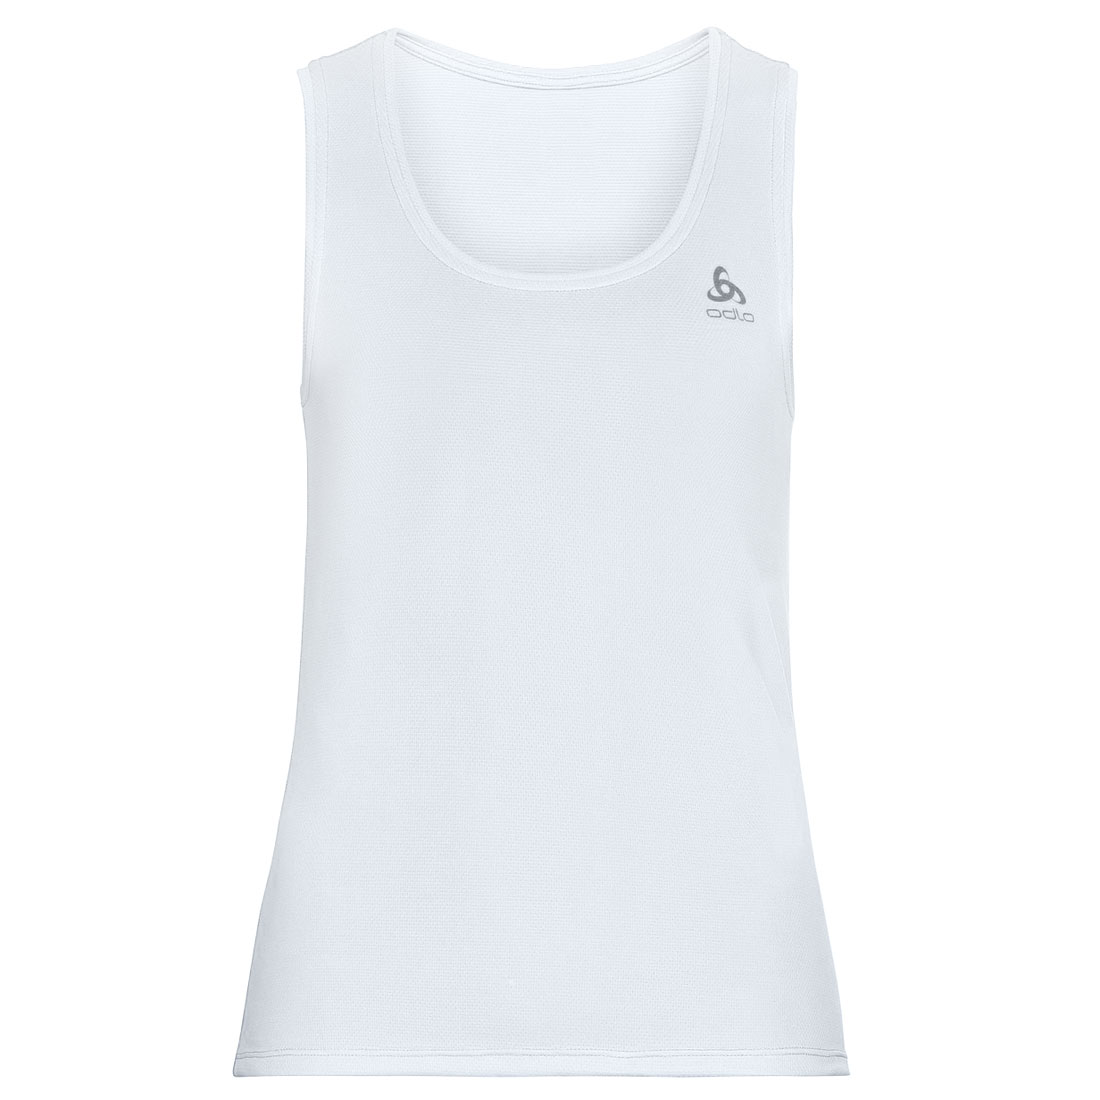 Produktbild von Odlo Active F-Dry Light Ärmelloses Unterhemd Damen - weiß